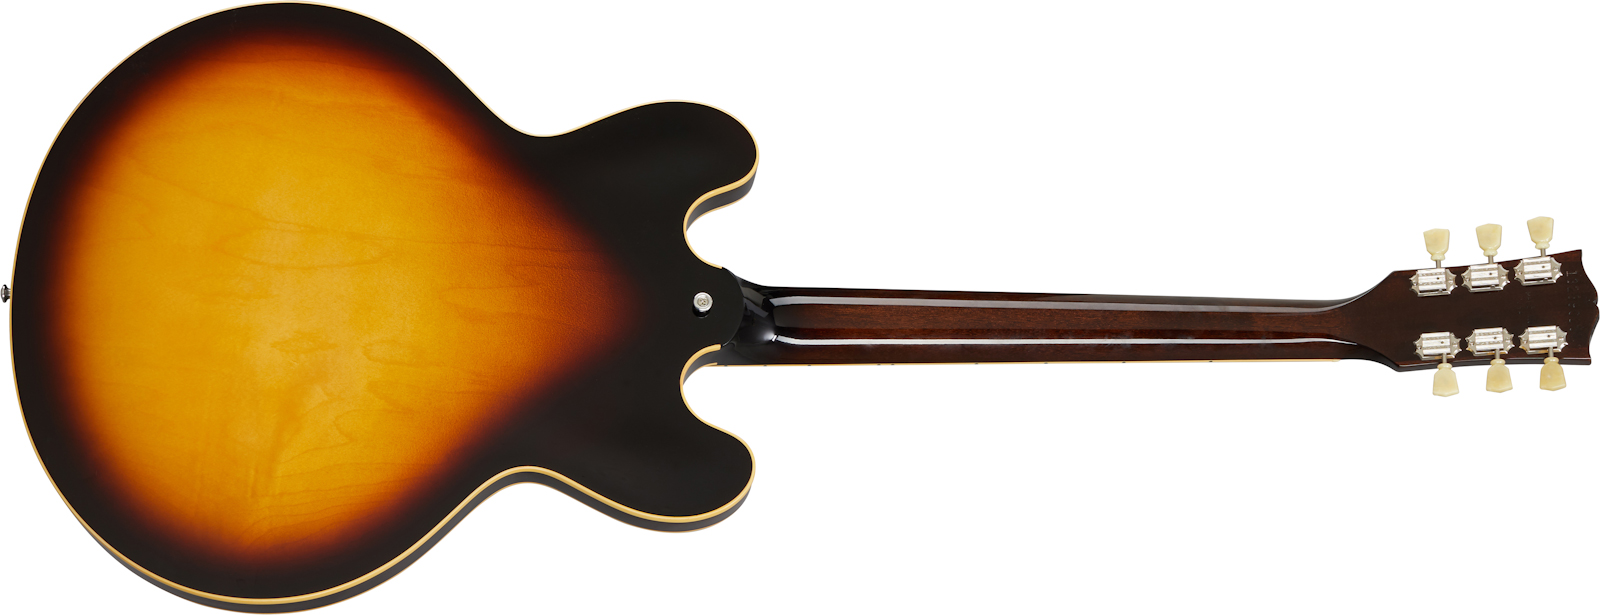 Gibson Es-345 Lh Original Gaucher 2h Ht Rw - Vintage Burst - Guitarra electrica para zurdos - Variation 1